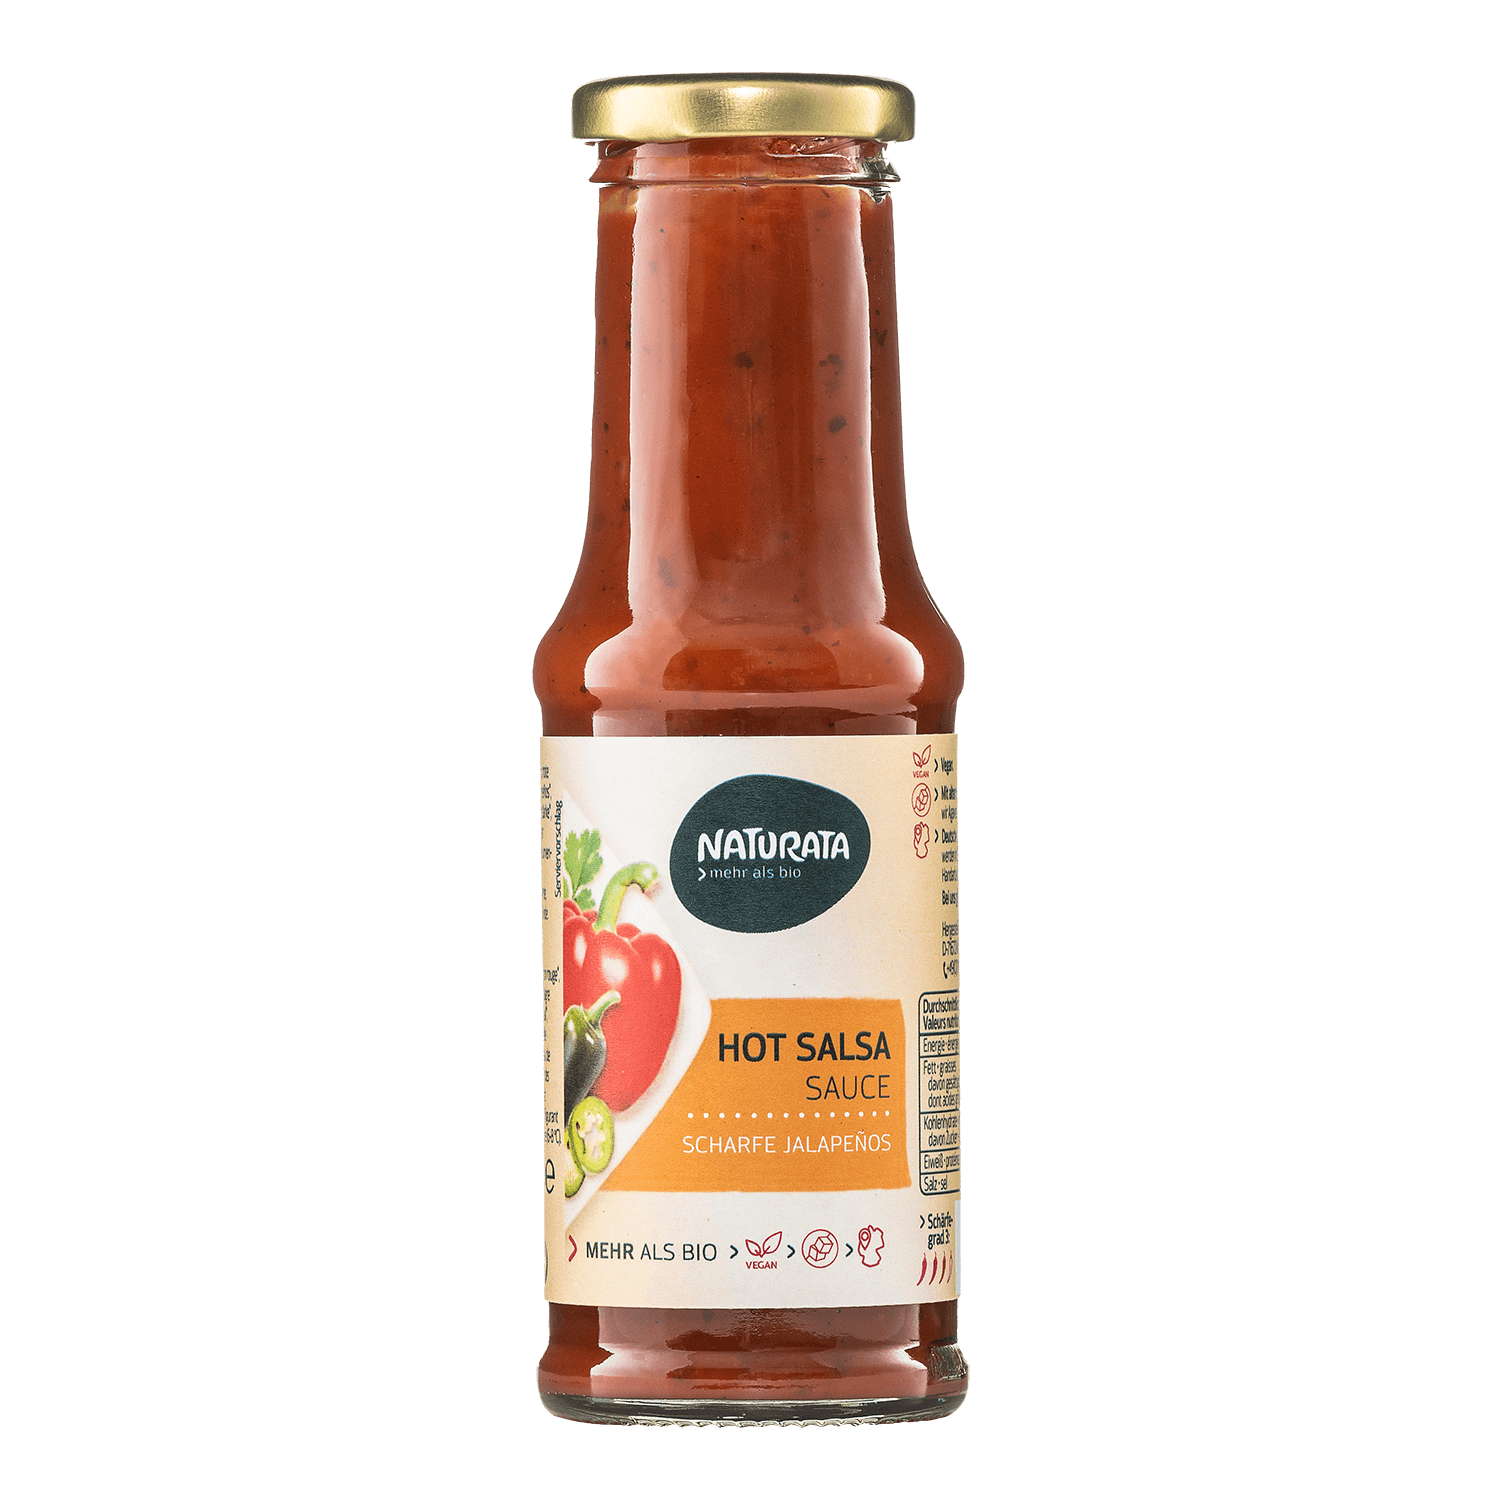 Hot Salsa Sauce, 210 ml